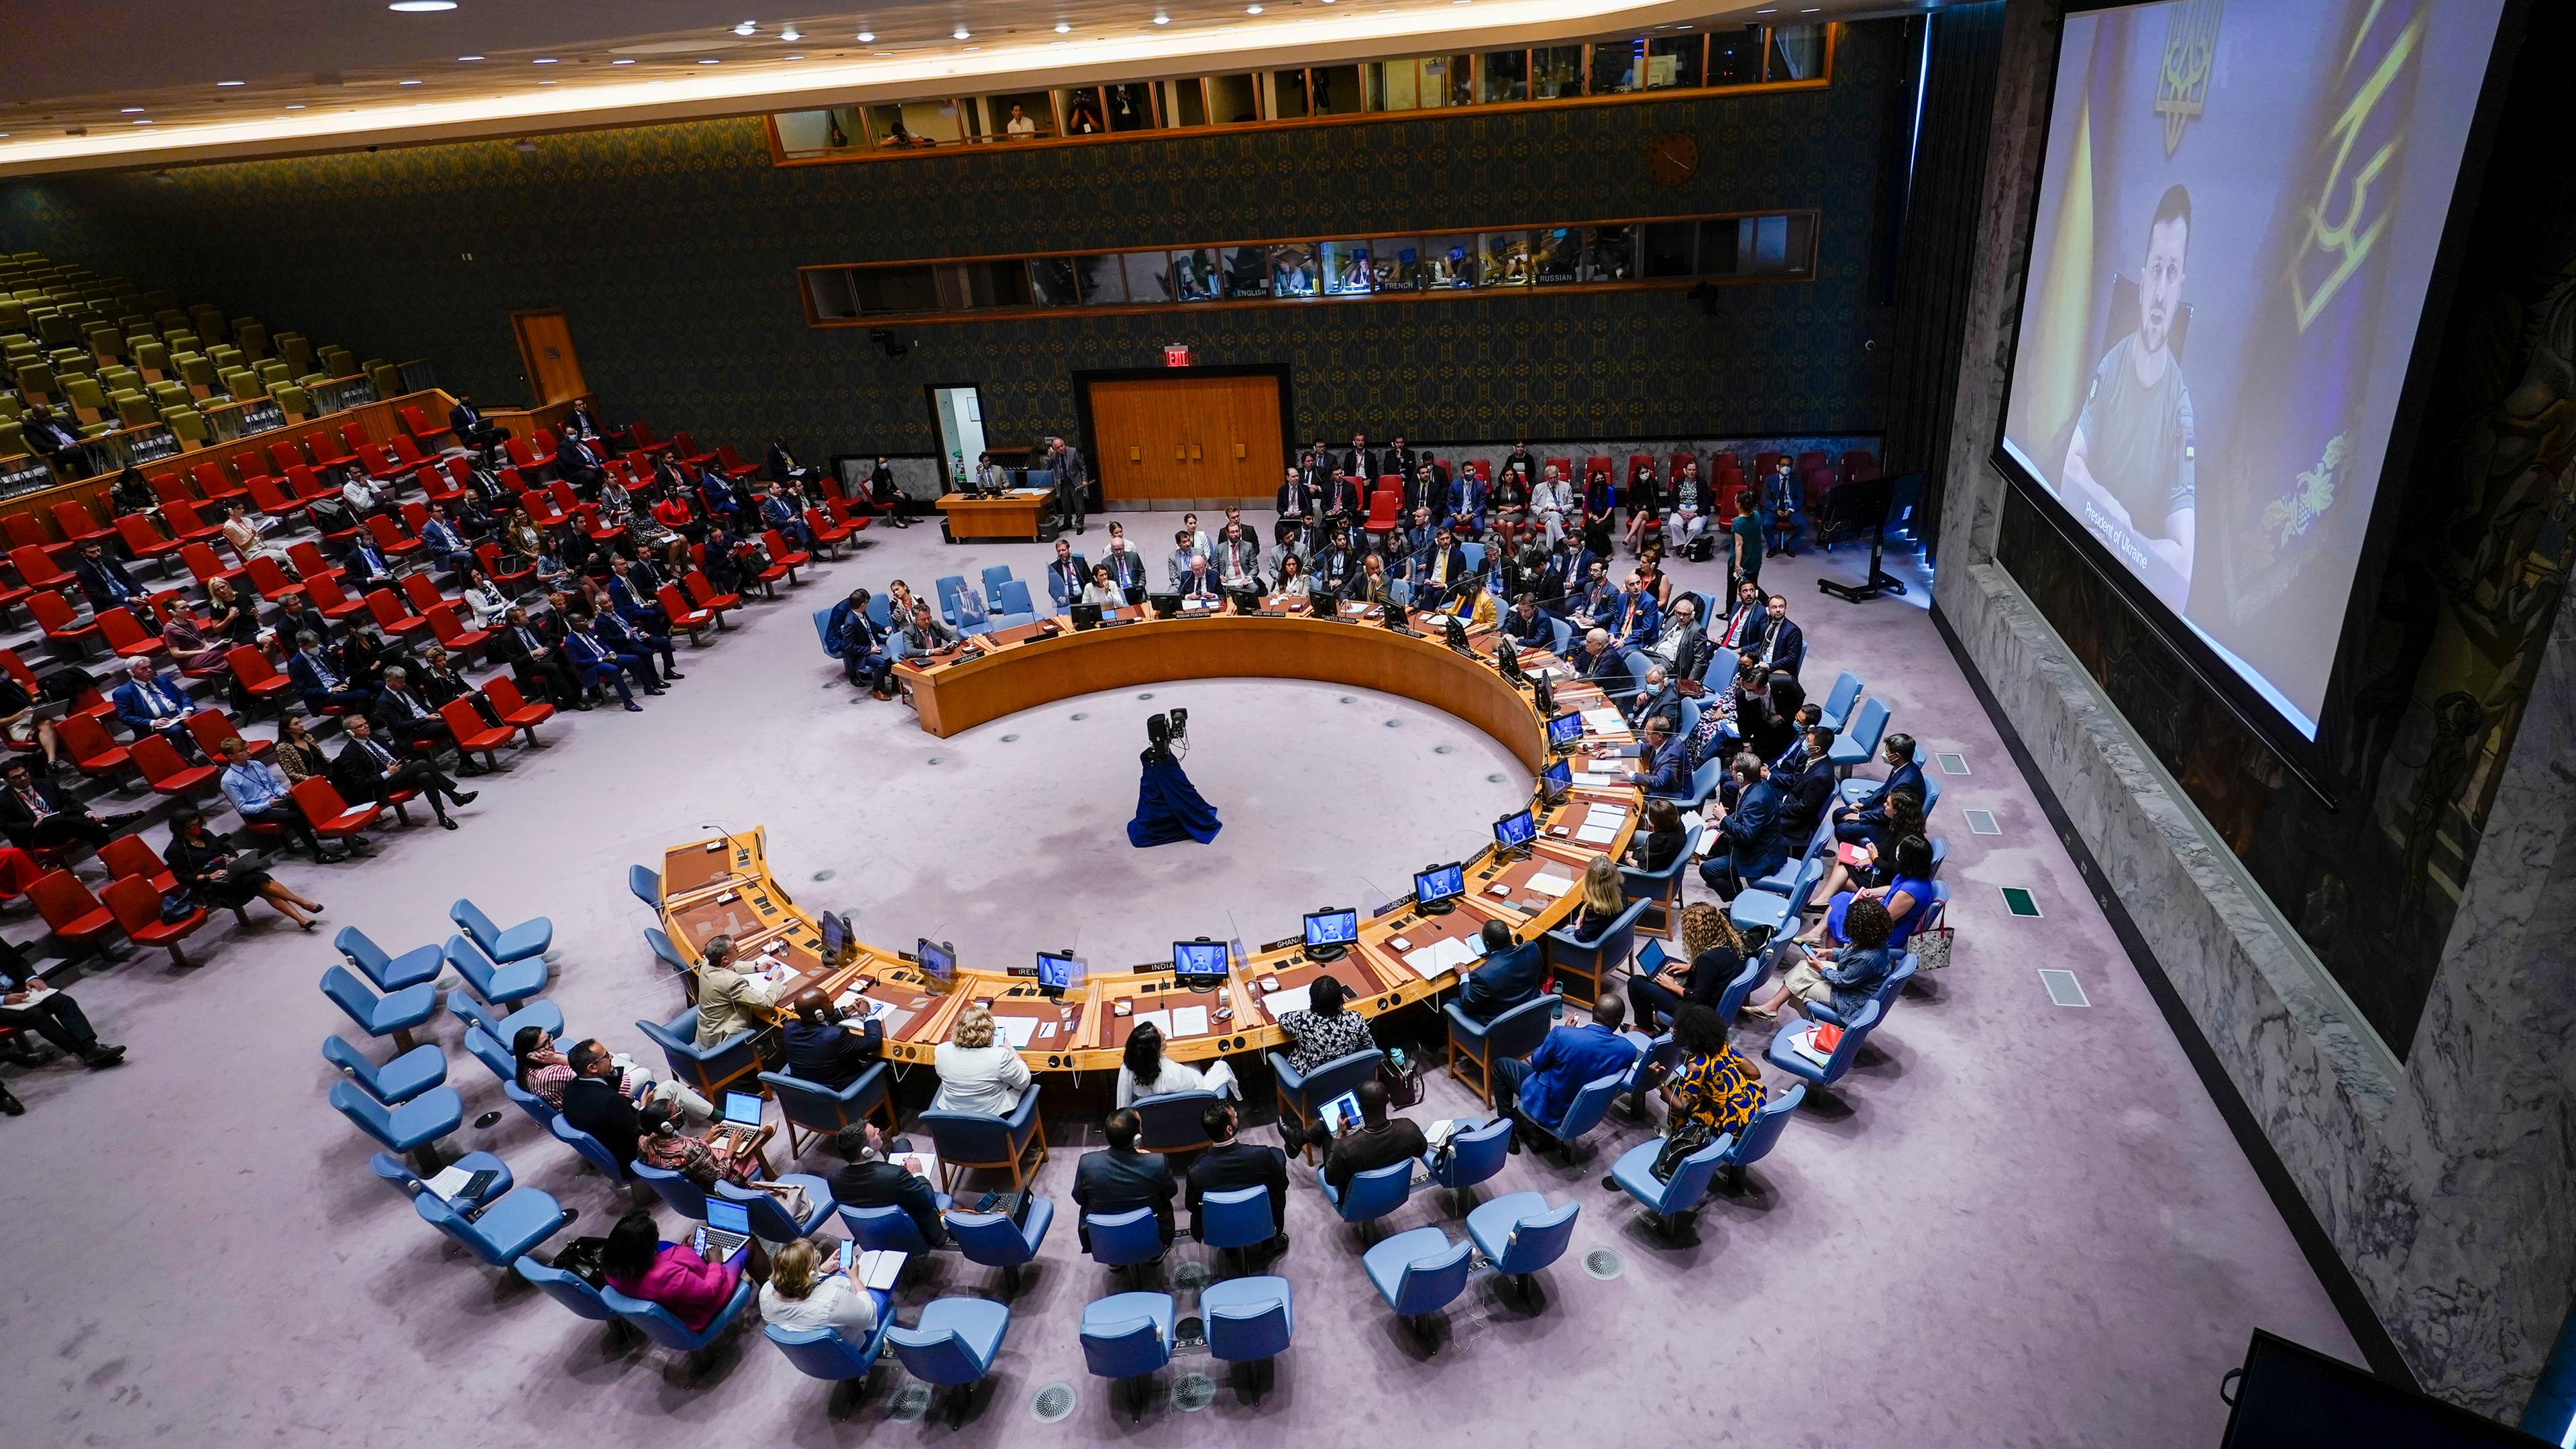 Sitzung des UN-Sicherheitsrates